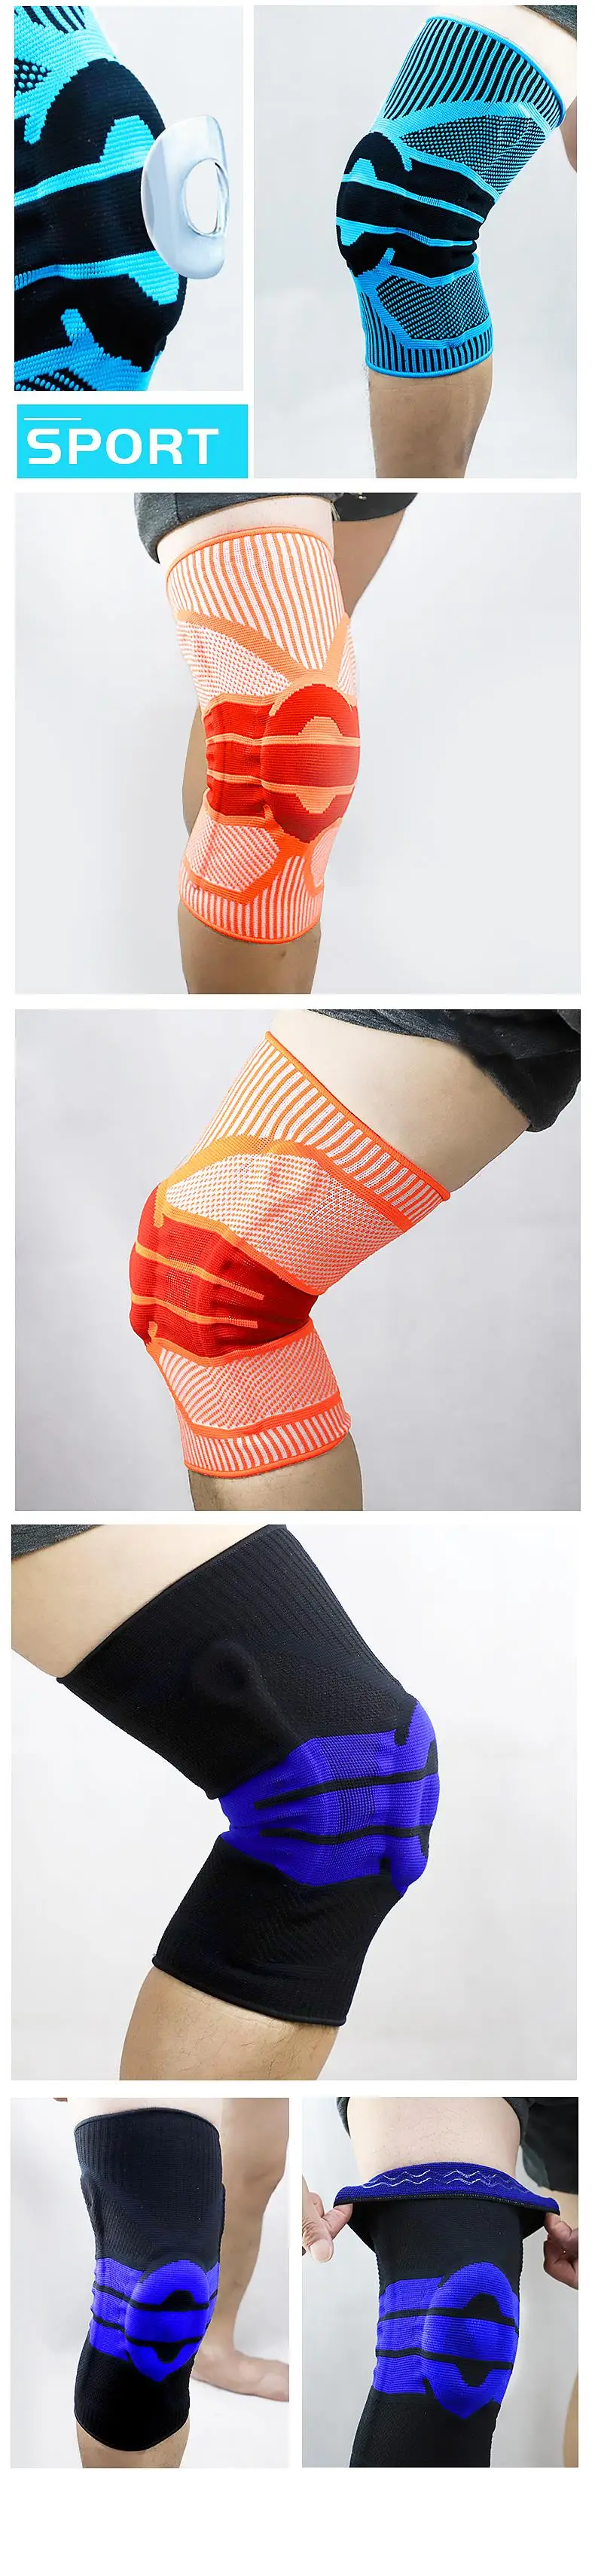 Эластичные Наколенники Brace для поддержки колена, Регулируемые Наколенники для баскетбола, волейбола, безопасности, защитный ремень, наколенники